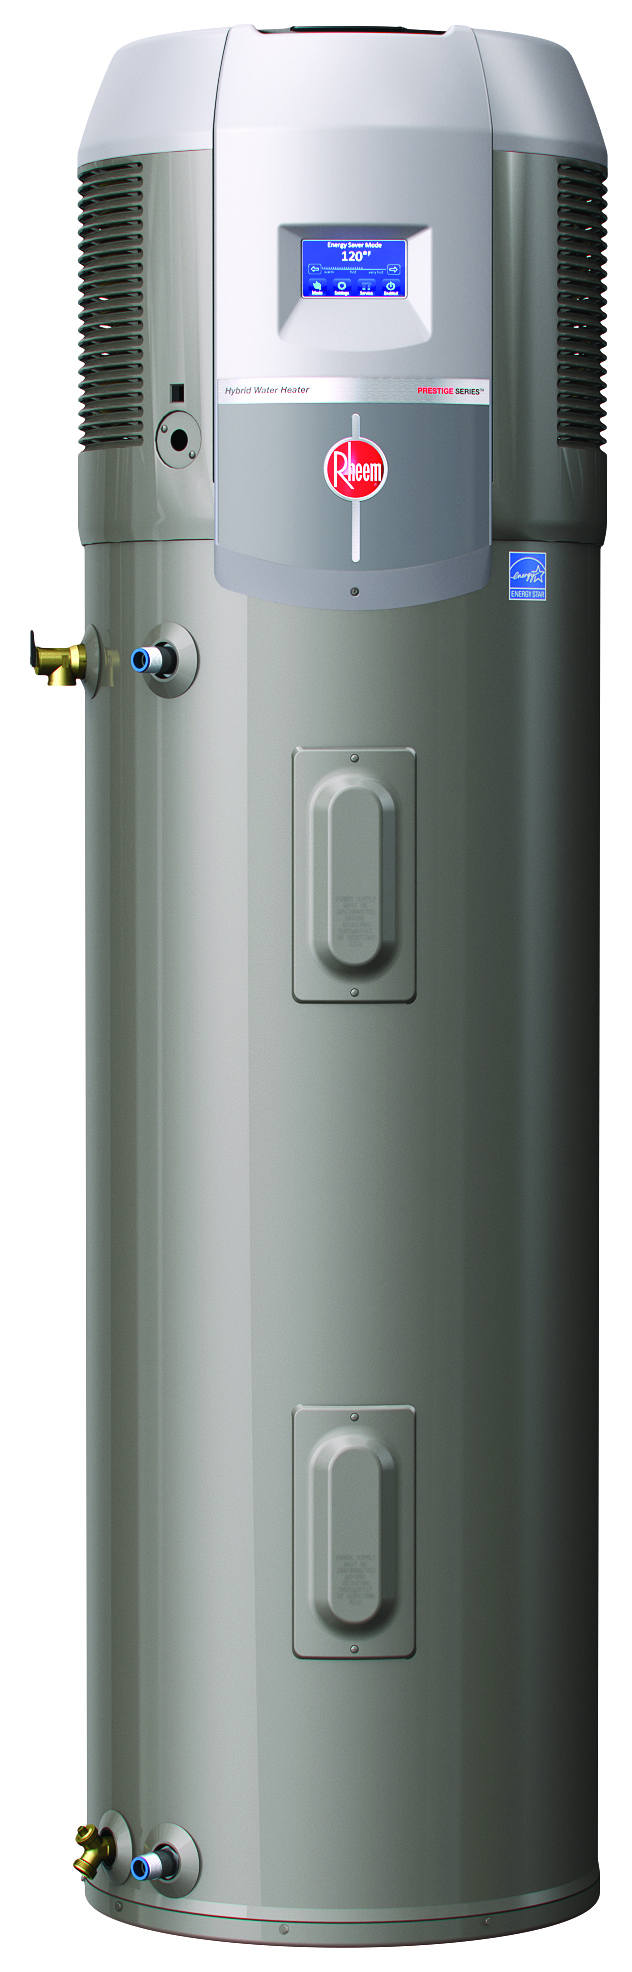 rheem-debuts-the-prestige-series-hybrid-electric-heat-pump-water-heater